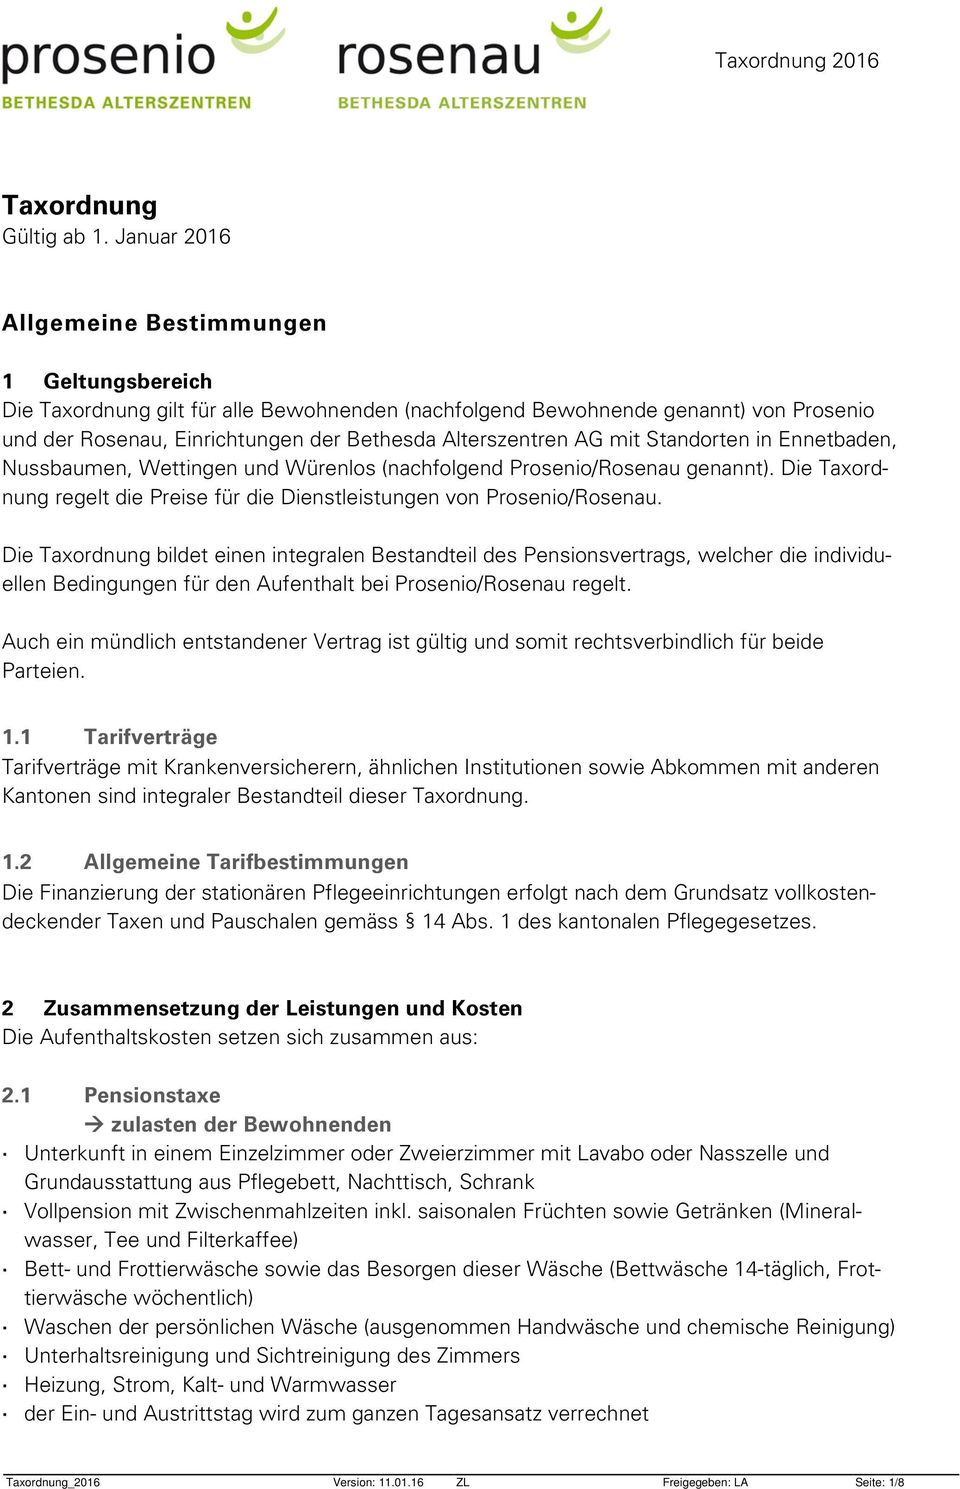 AG mit Standorten in Ennetbaden, Nussbaumen, Wettingen und Würenlos (nachfolgend Prosenio/Rosenau genannt). Die Taxordnung regelt die Preise für die Dienstleistungen von Prosenio/Rosenau.